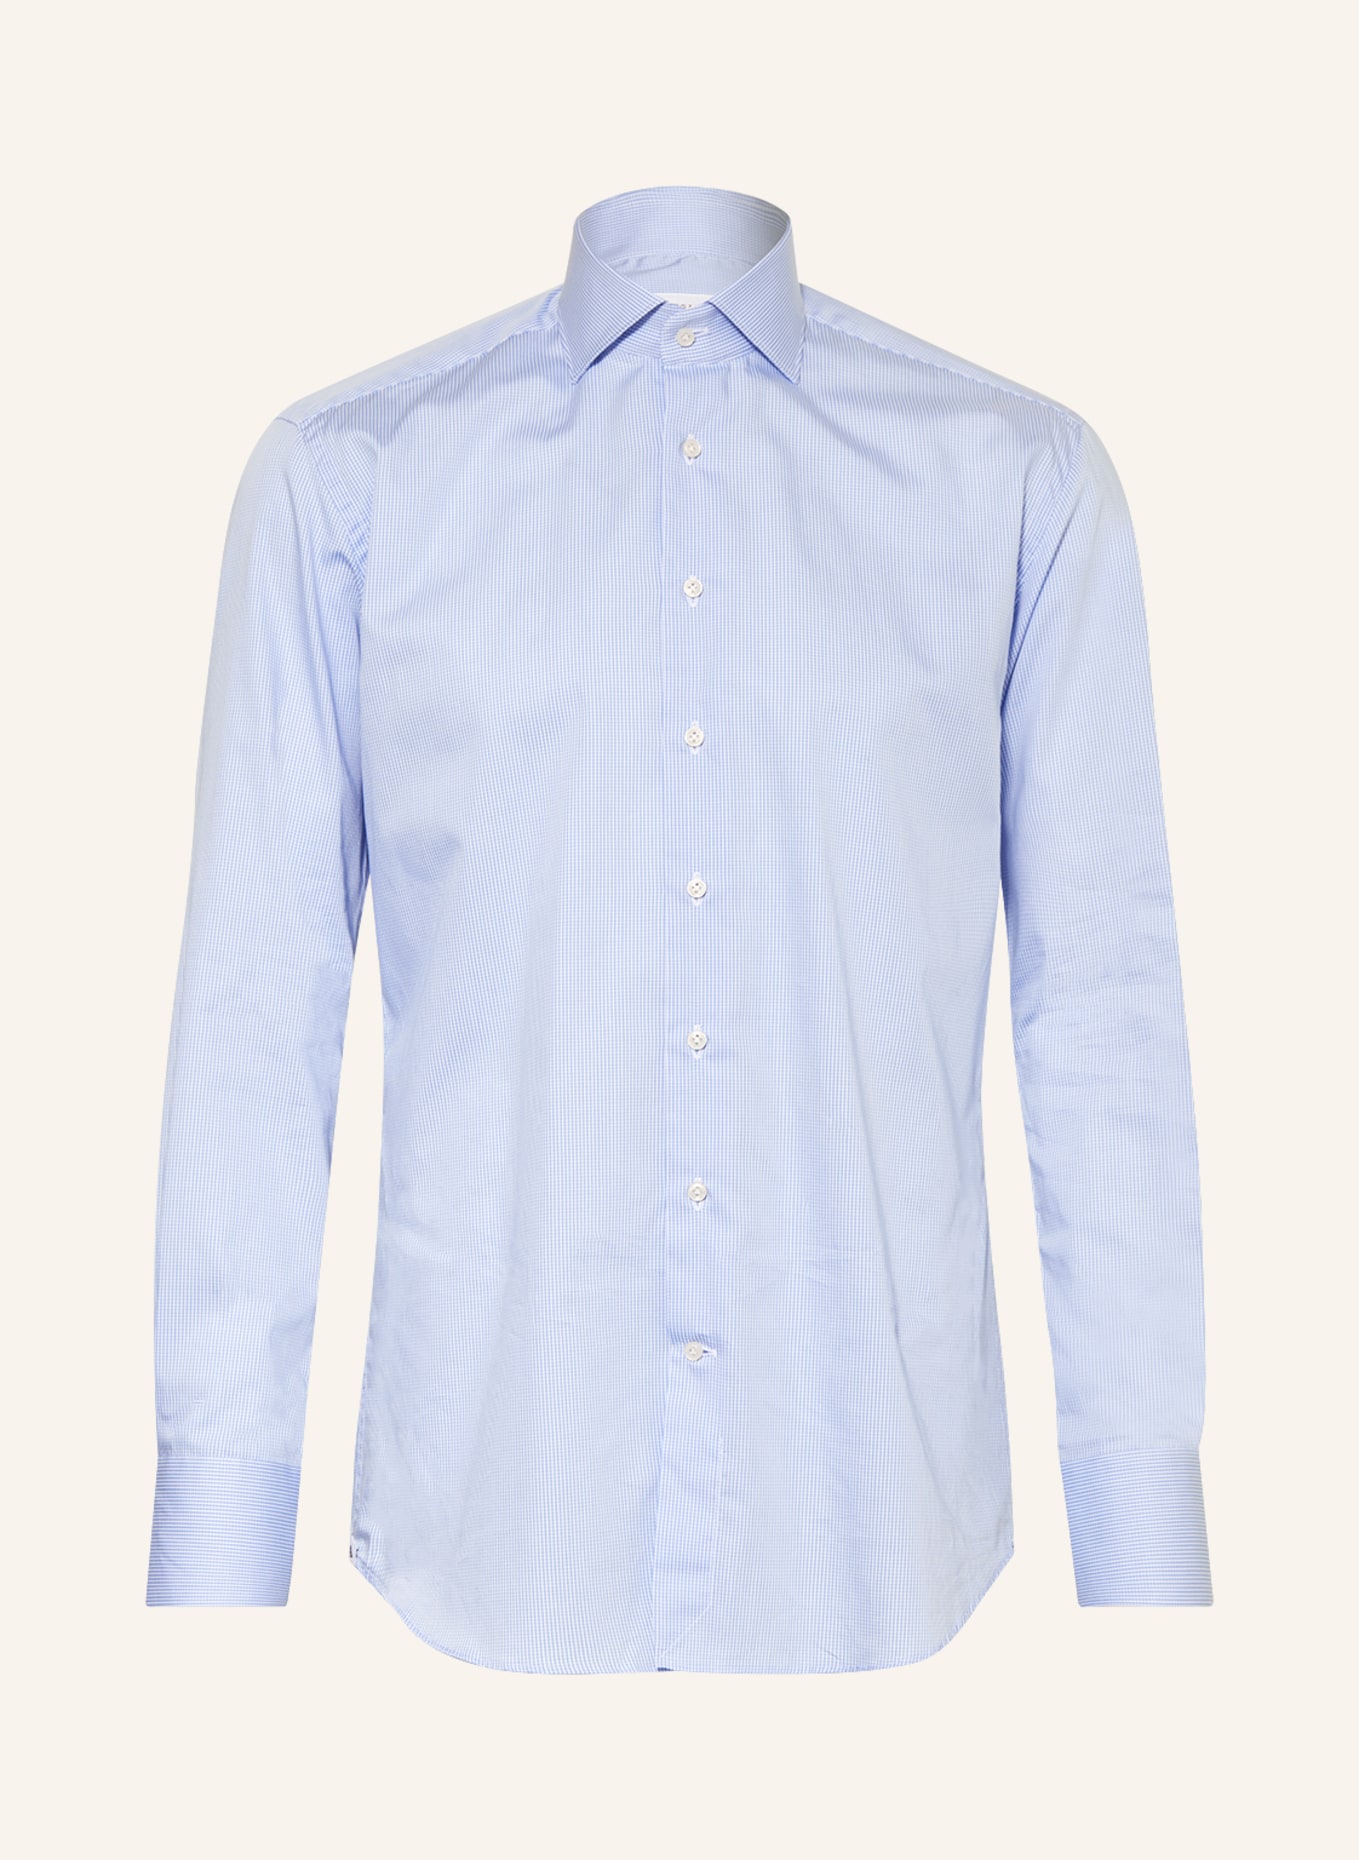 ARTIGIANO Shirt slim fit, Color: 4 small ch l'blue (Image 1)